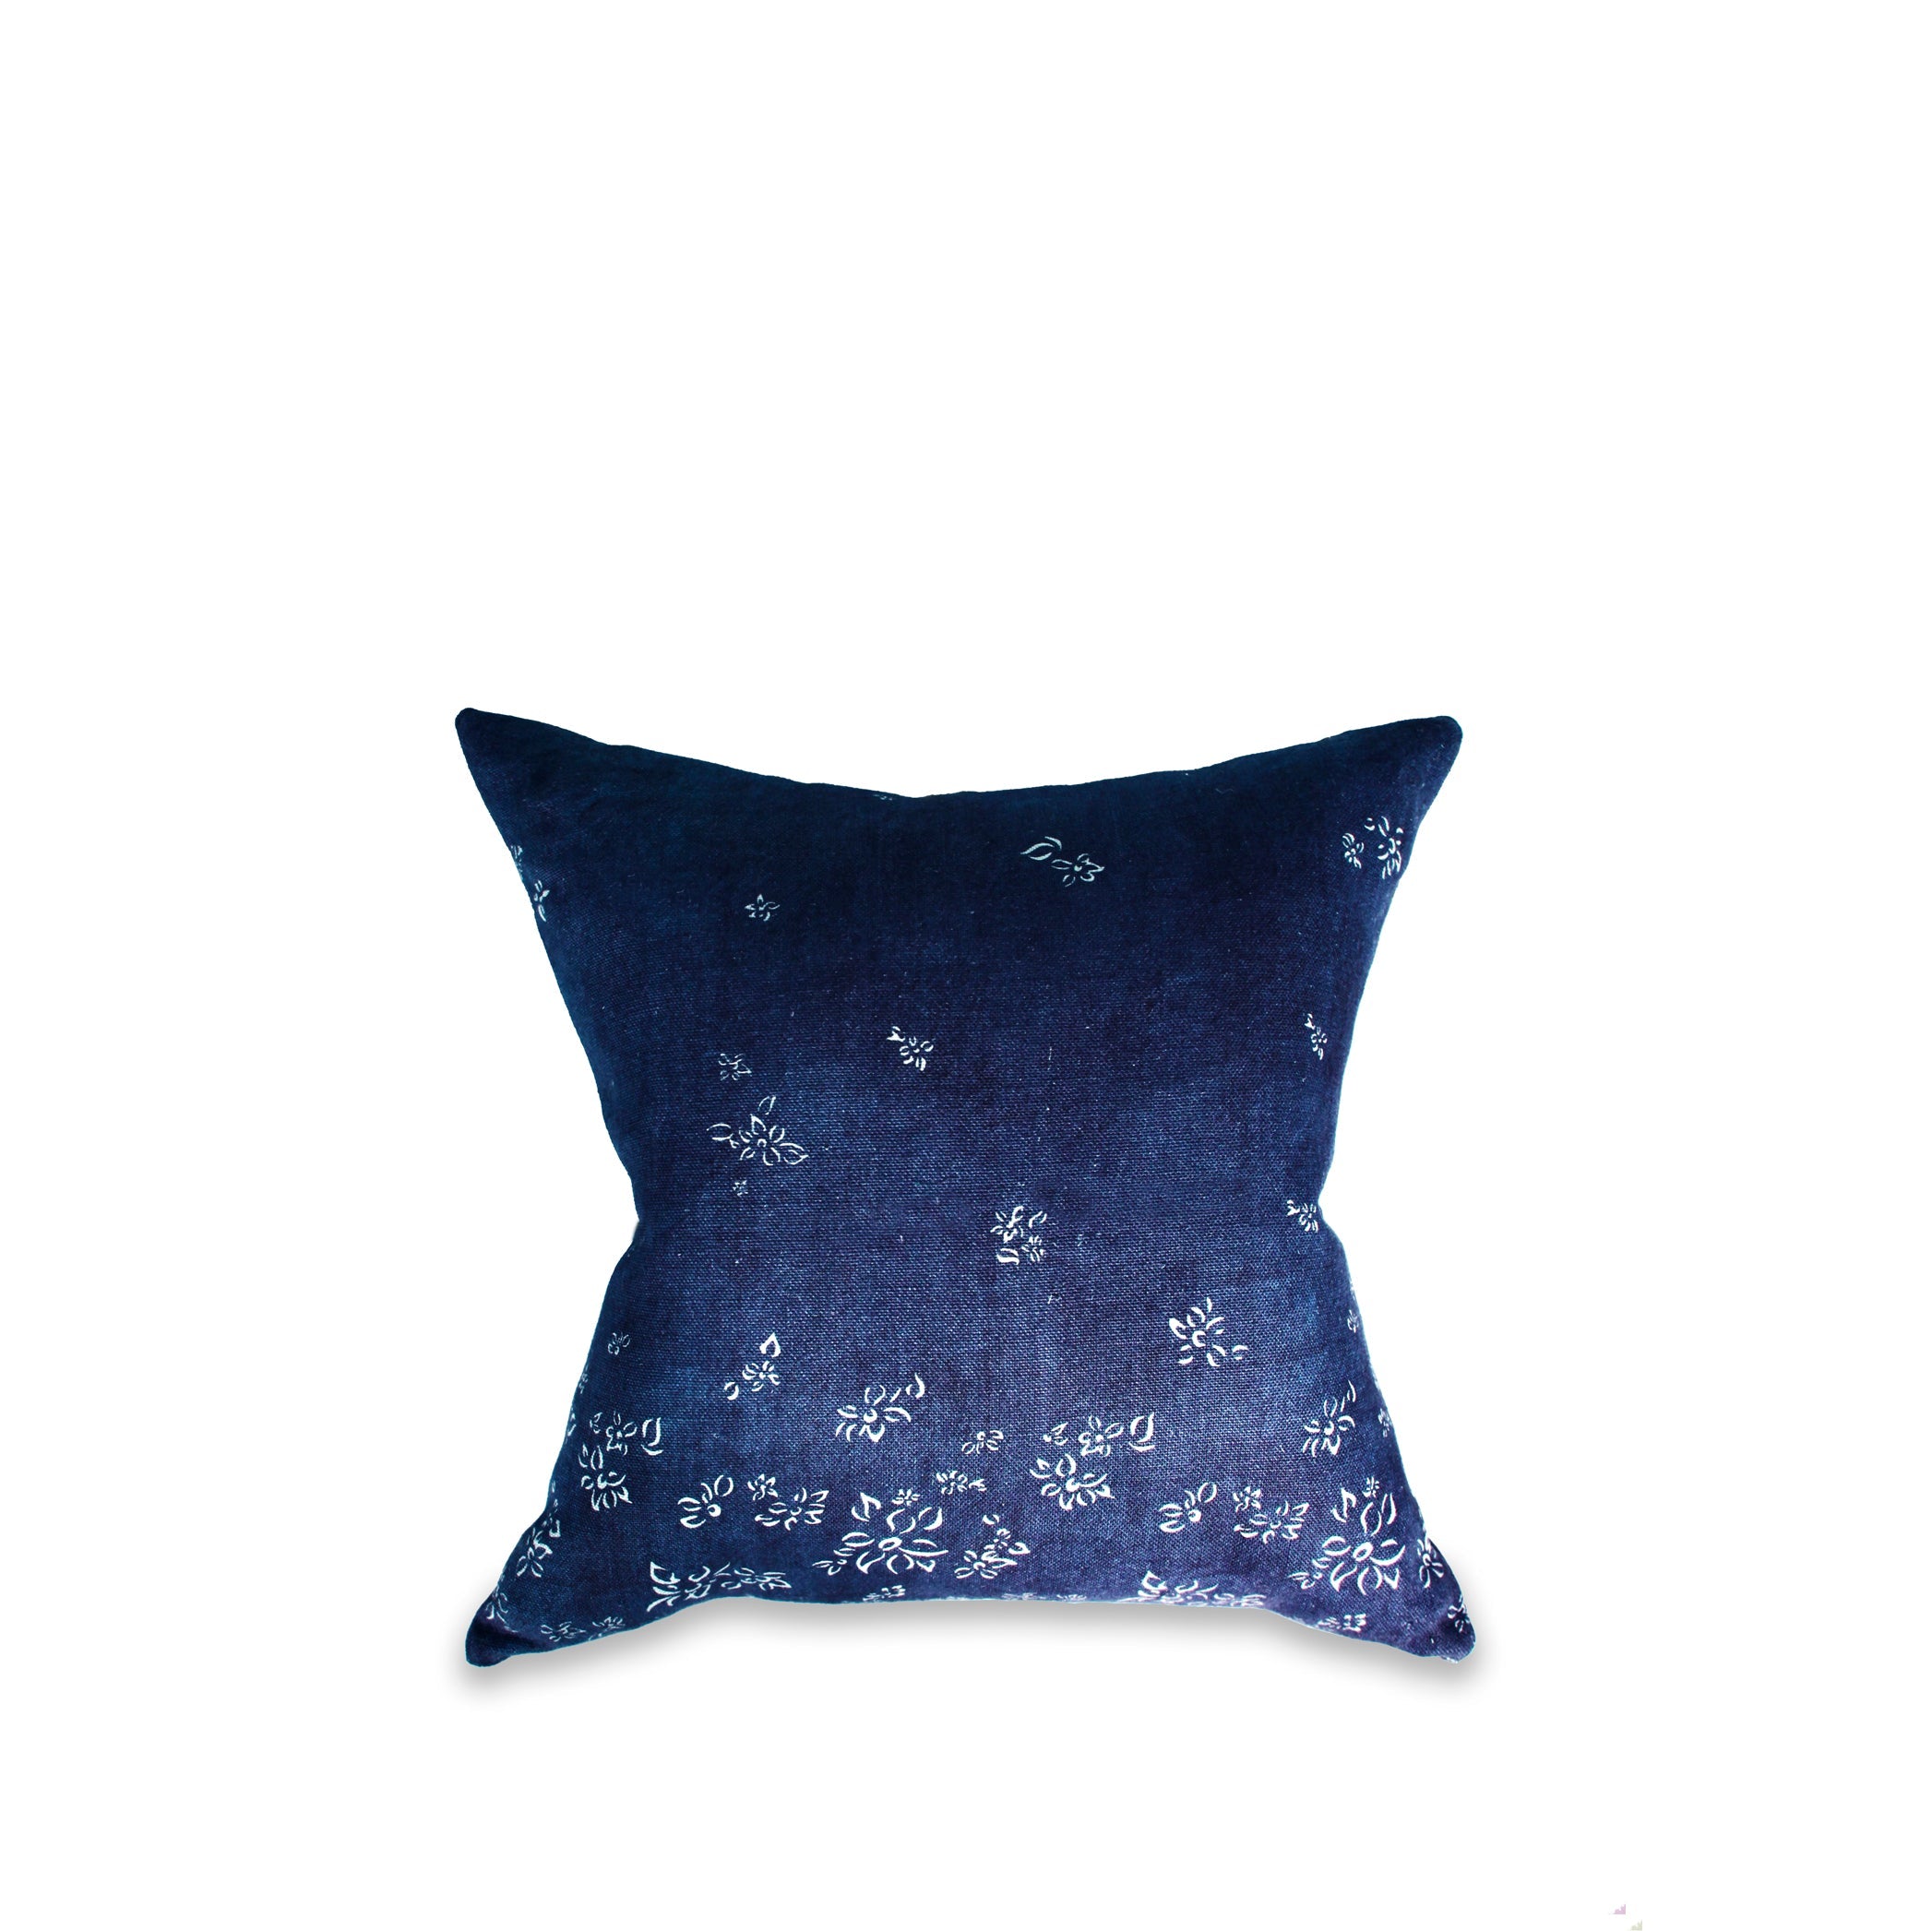 Heavy Linen Falling Flower Cushion in Full Field Midnight Blue, 50cm x 50cm